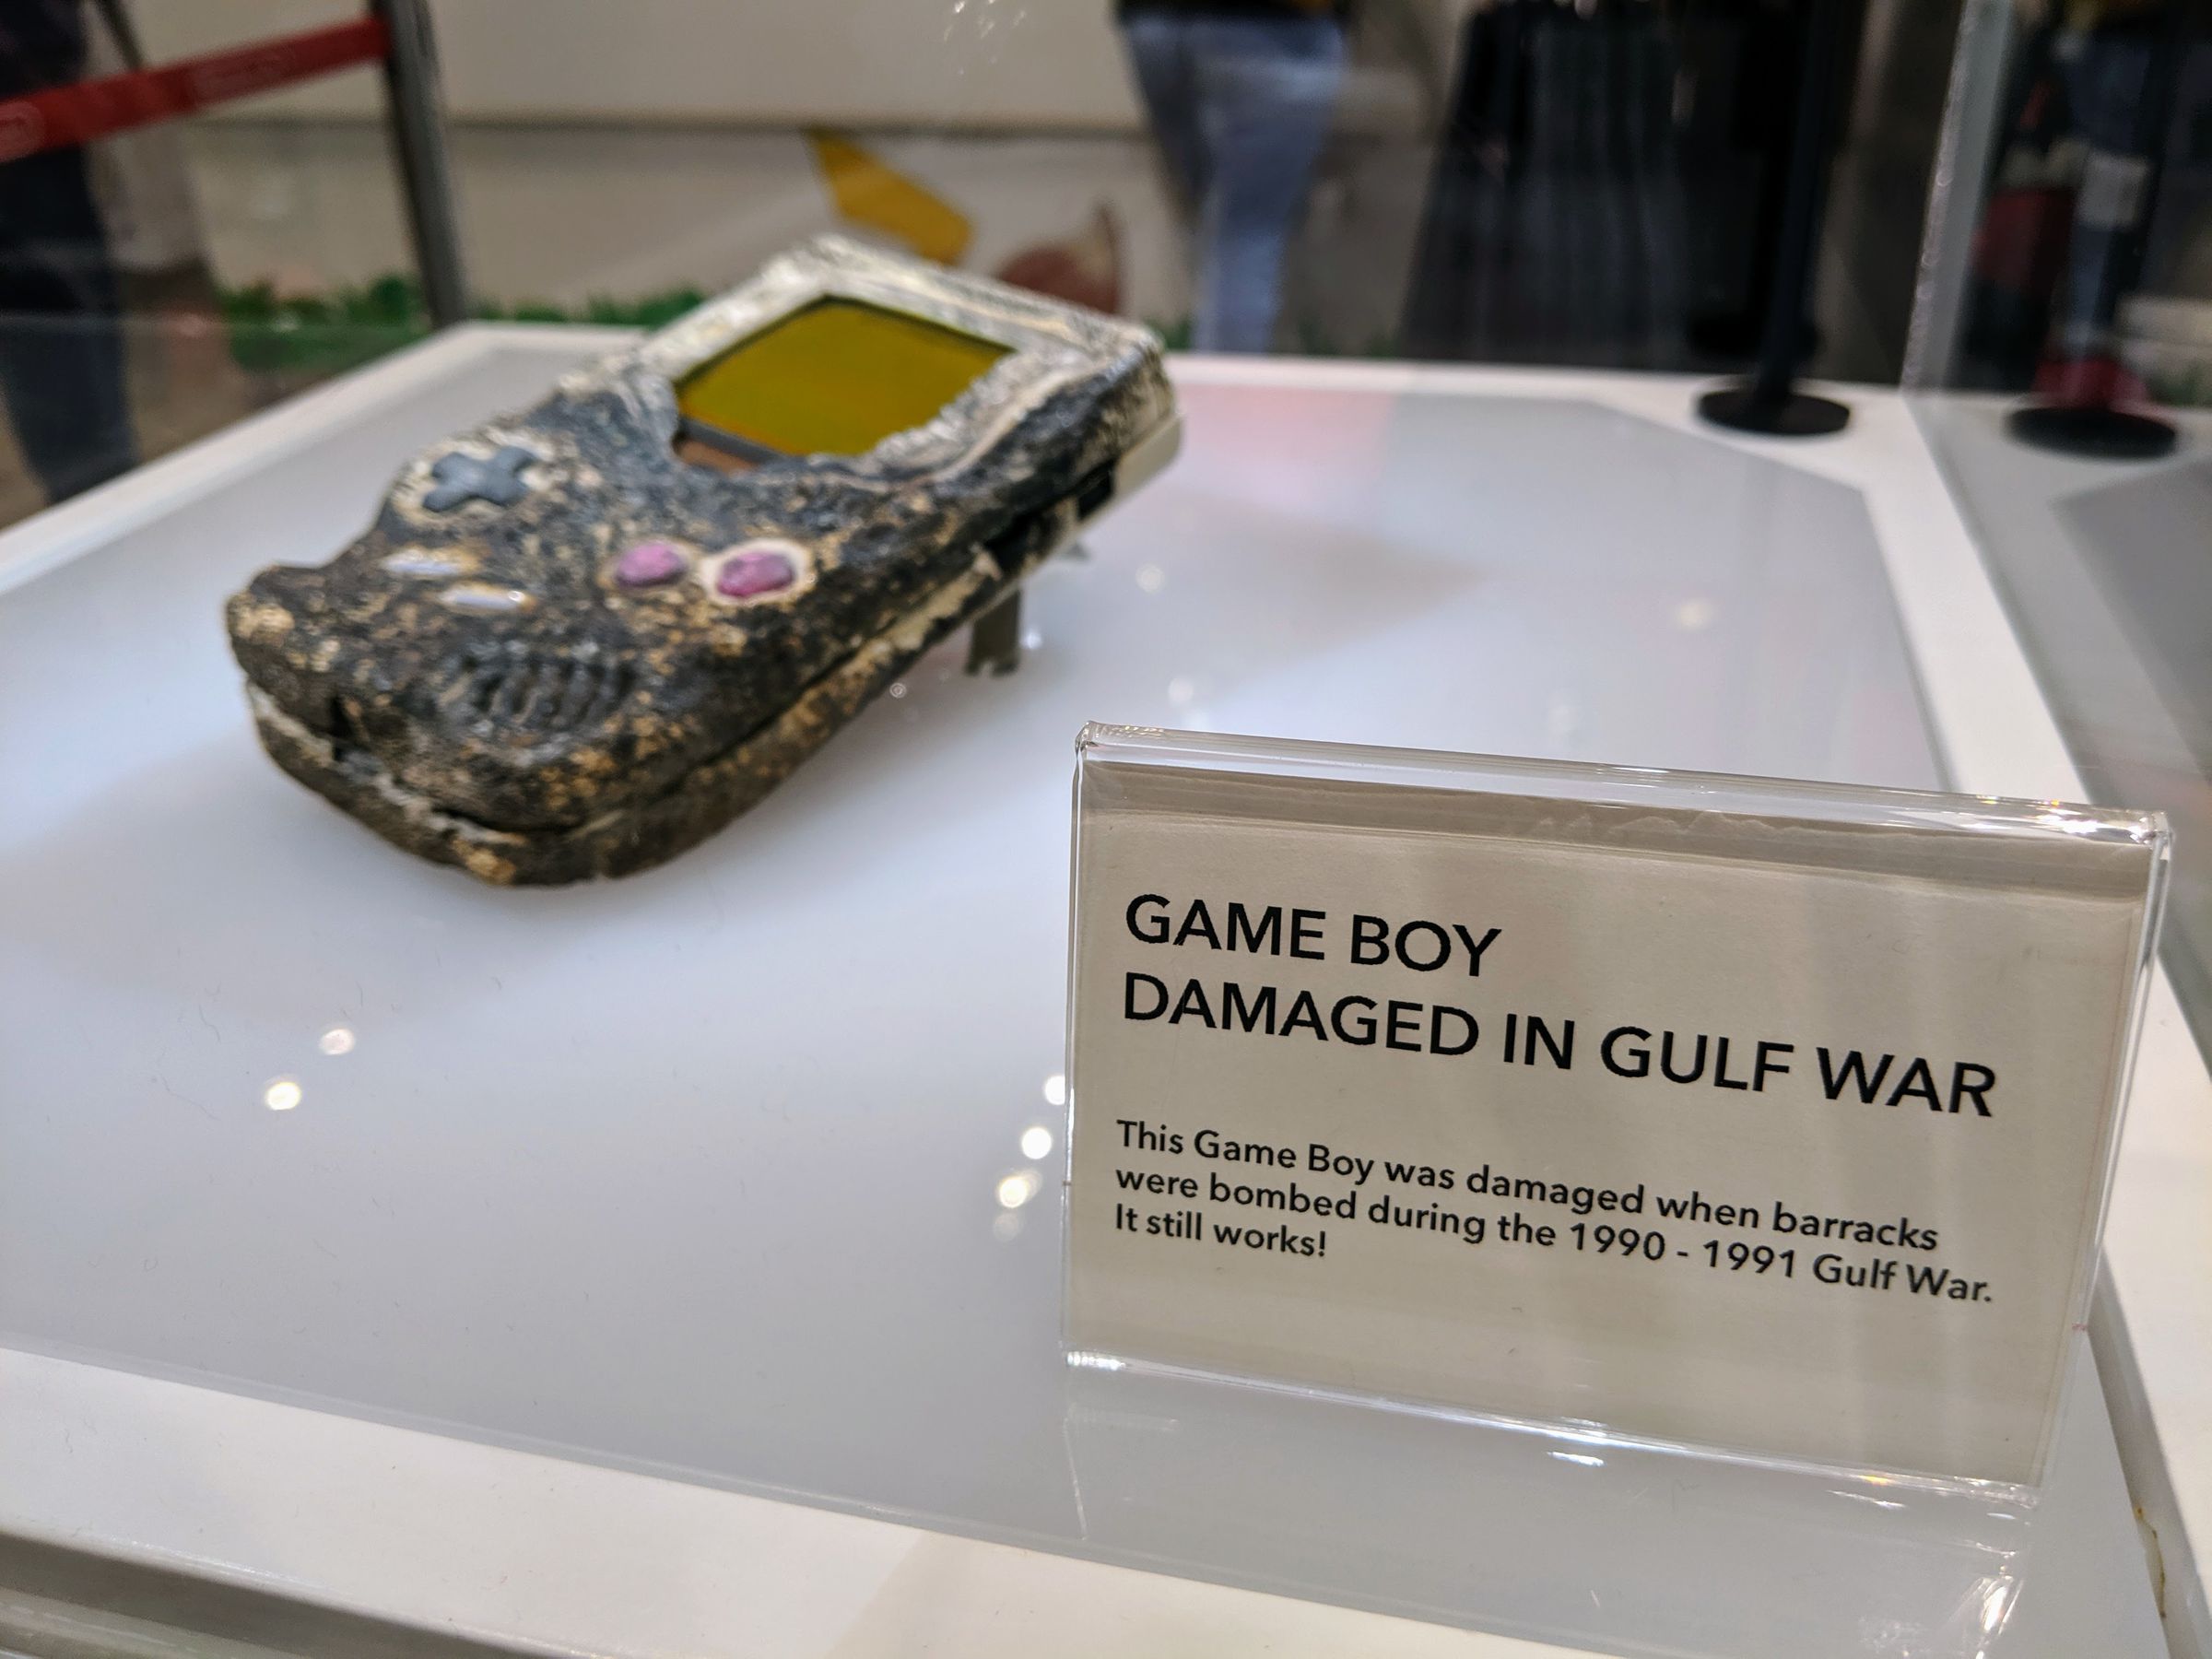 Nintendo’s original plaque reads “Game Boy Damaged in Gulf War. This Game Boy was damaged when barracks were bombed during the 1990 - 1991 Gulf War. It still works!”